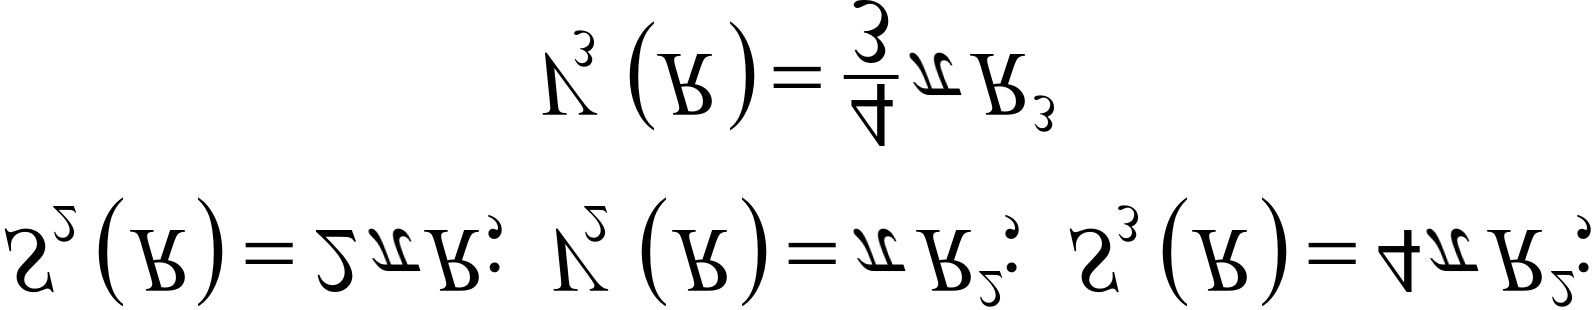 Existen unas fórmulas (véase D bibliografía) y que dan los valores en función de R y n (R es el radio y n el número de dimensiones), del área y del volumen de la hiperesfera.